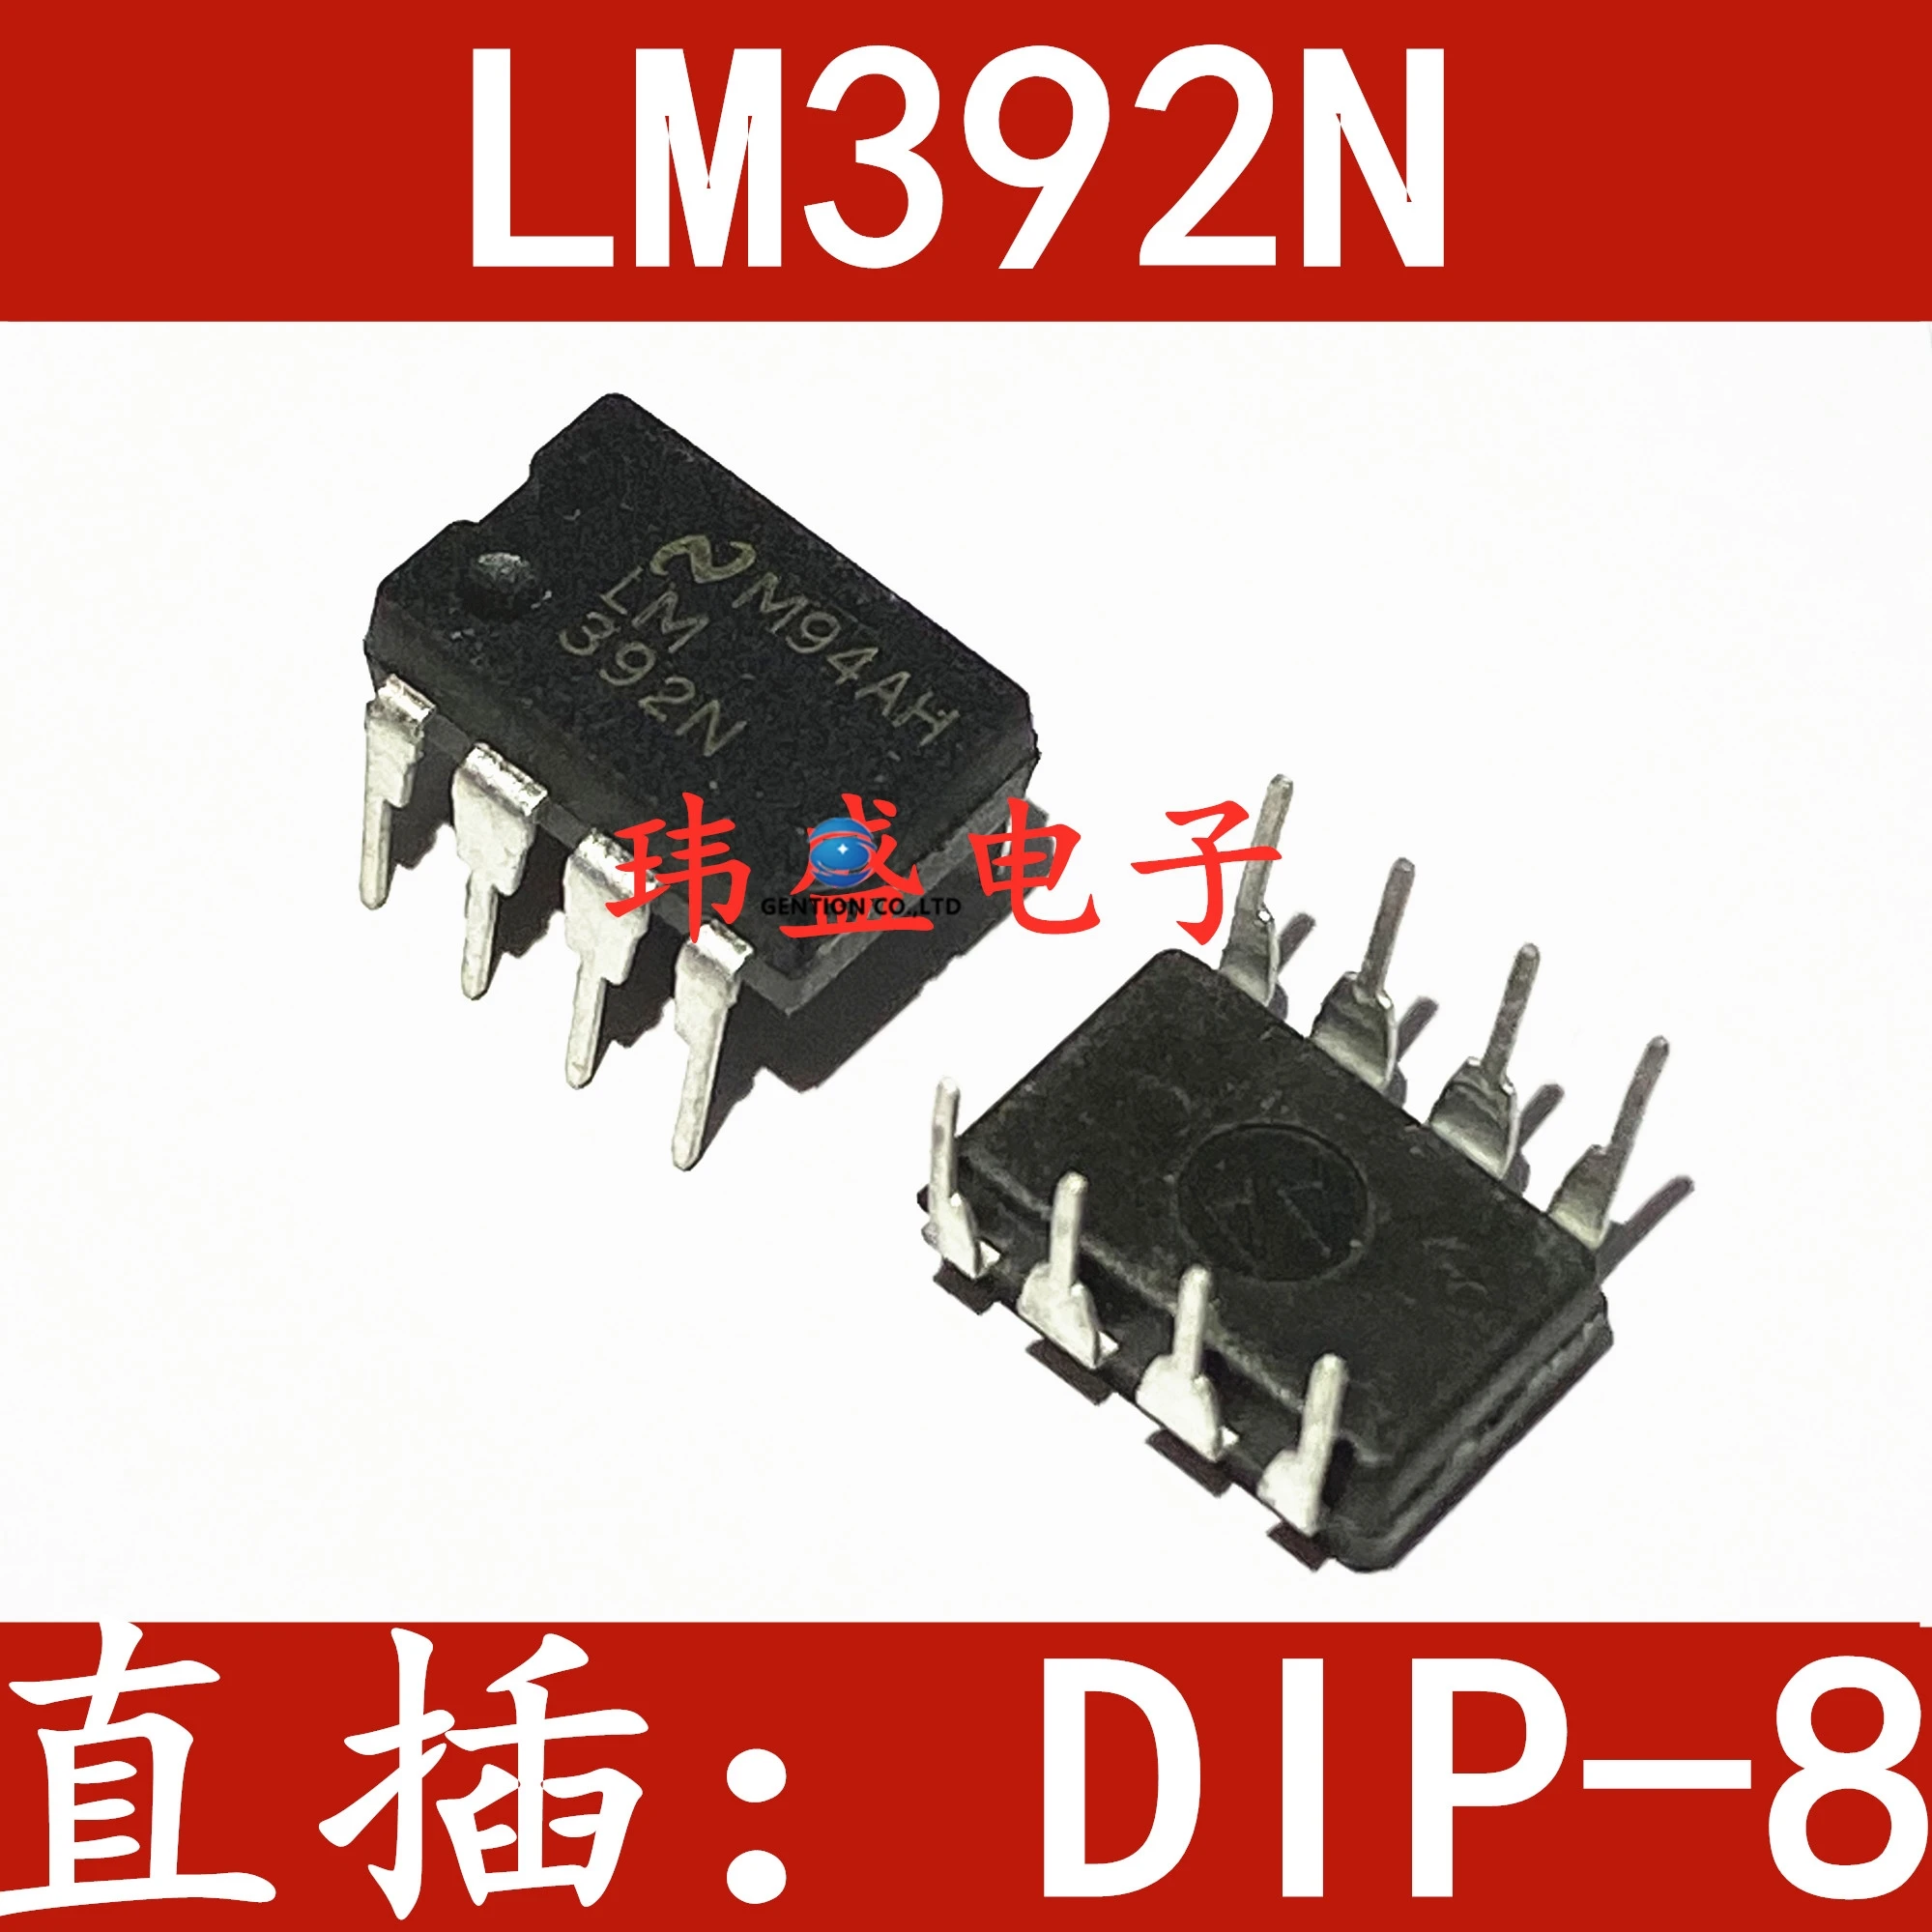 

Усилитель/чип компаратора LM392N LM392 upright DIP-8, 10 шт., встроенный блок в наличии, 100% новый и оригинальный